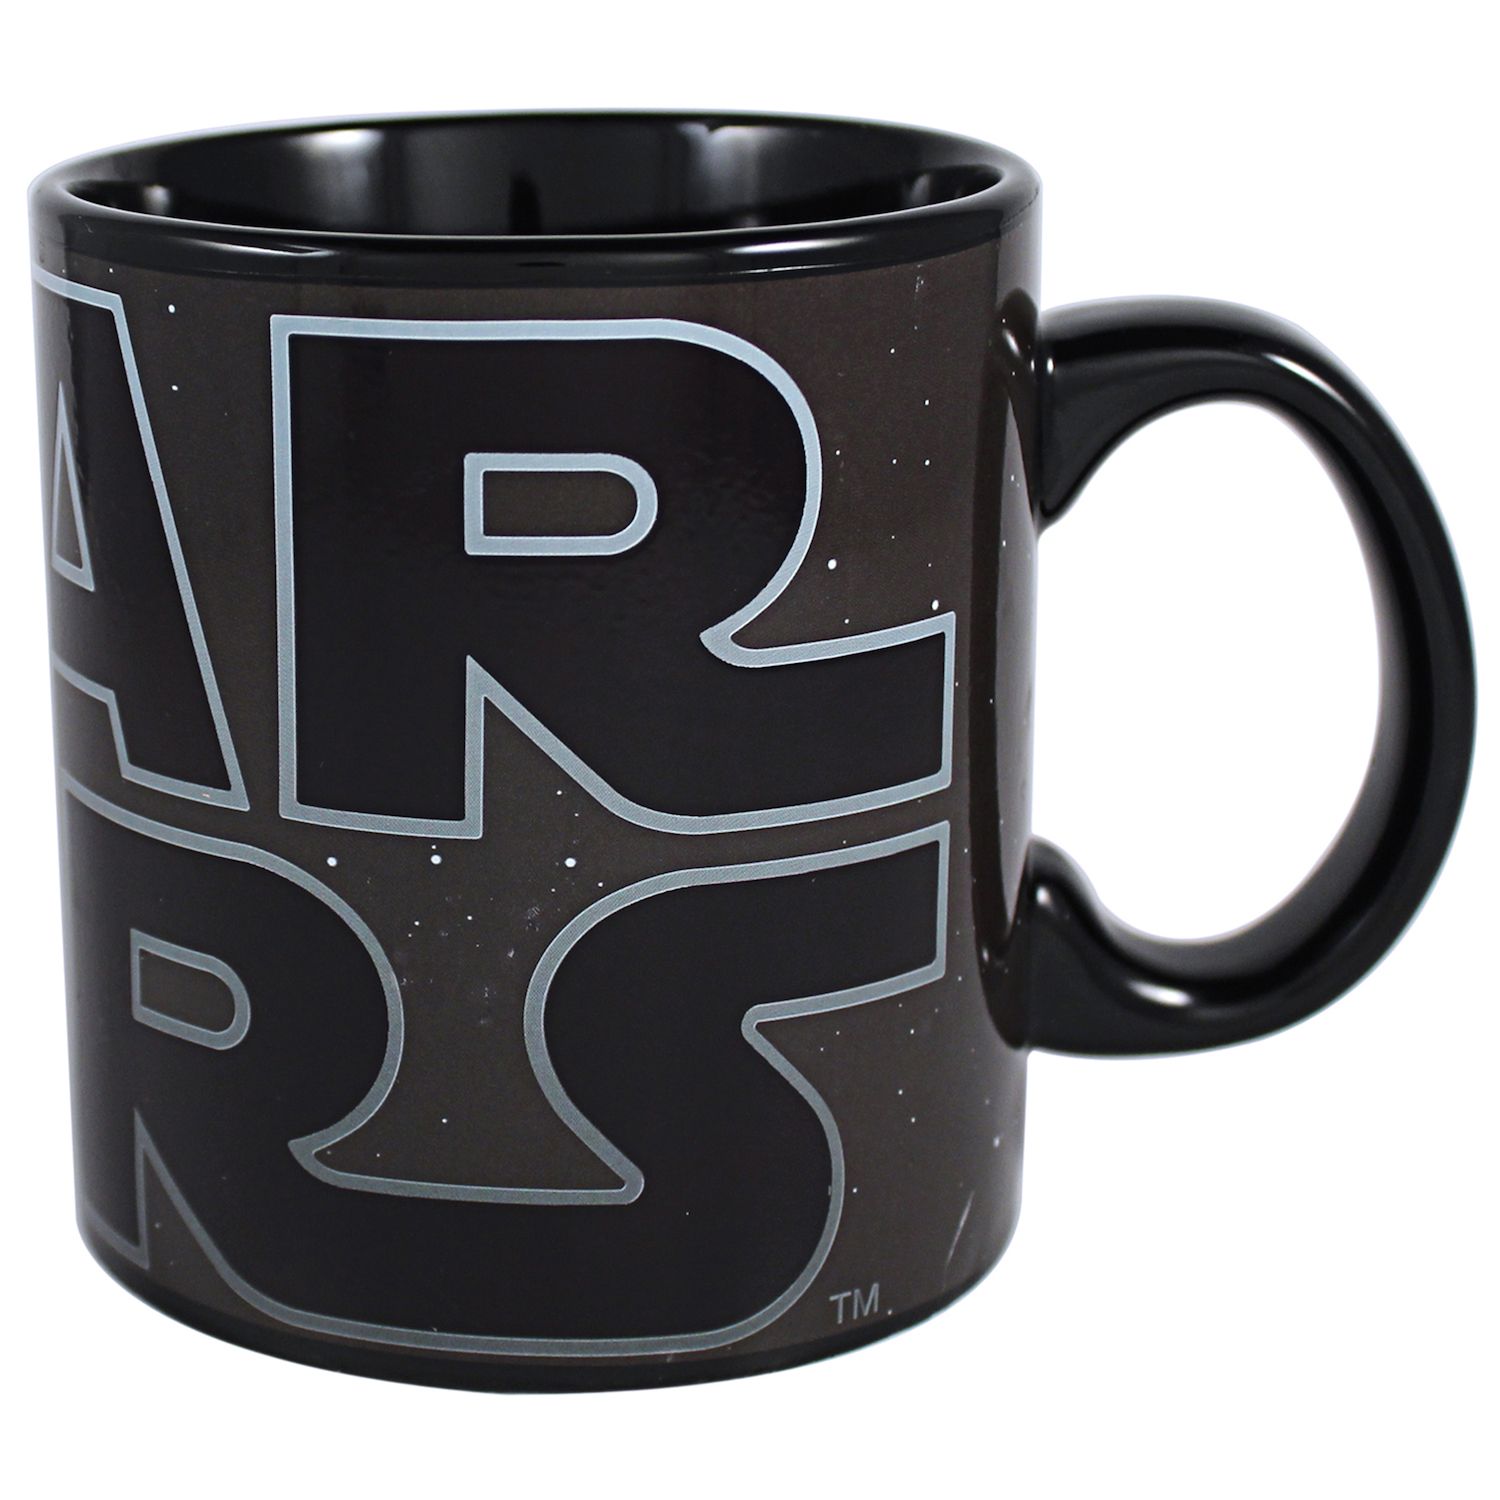 star wars ceramic mug